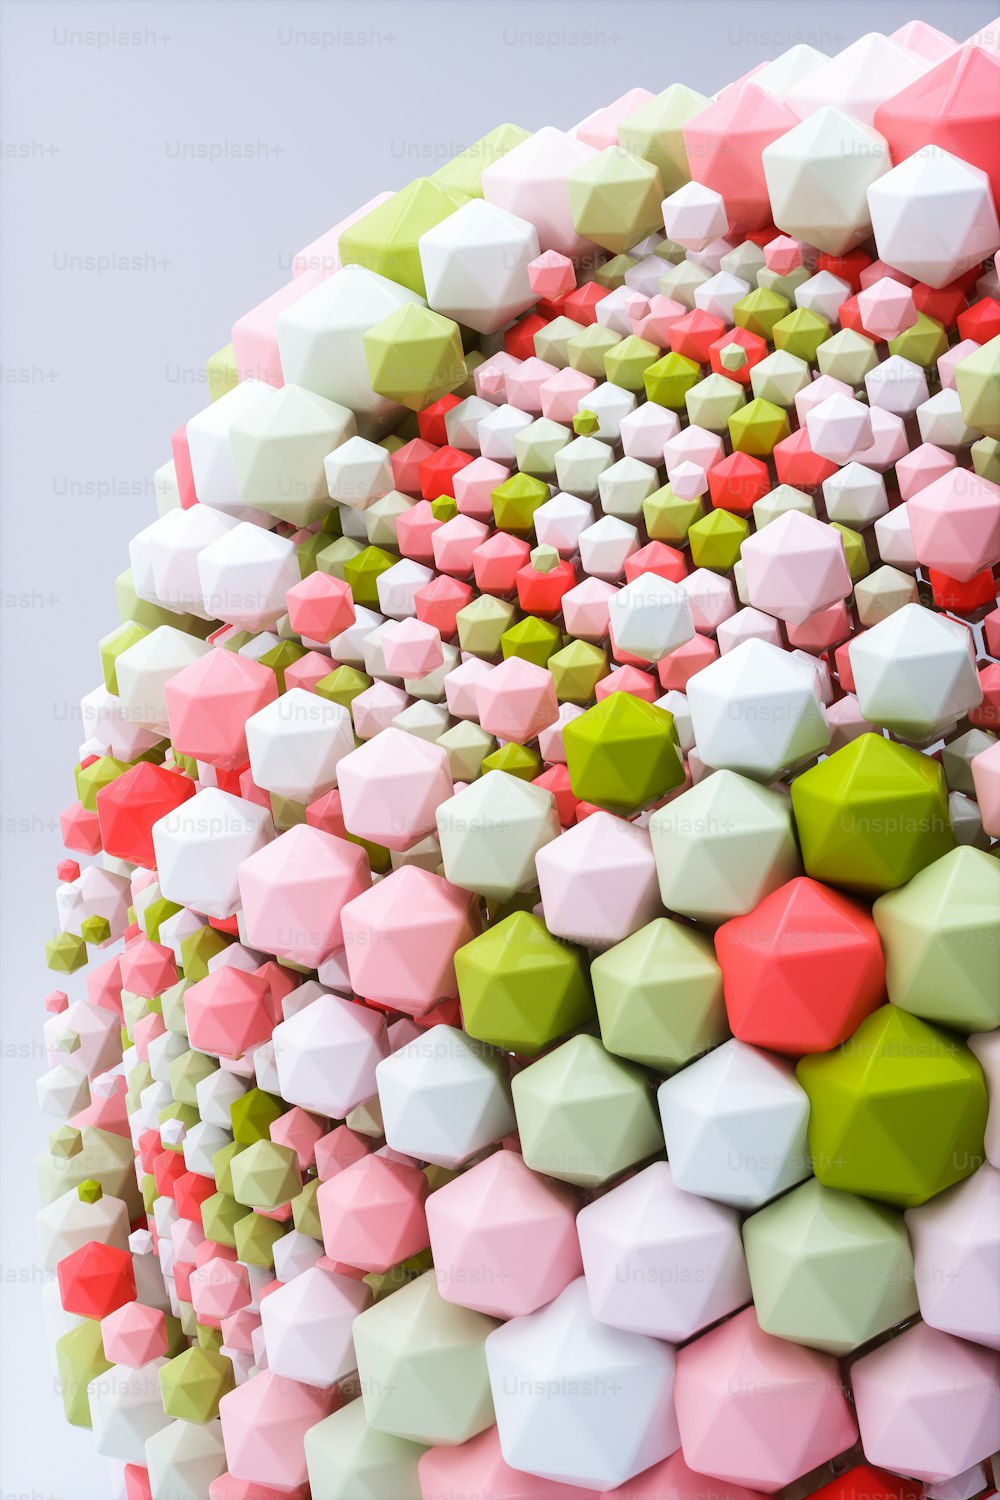 Una scultura colorata fatta di cubi e forme esagonali